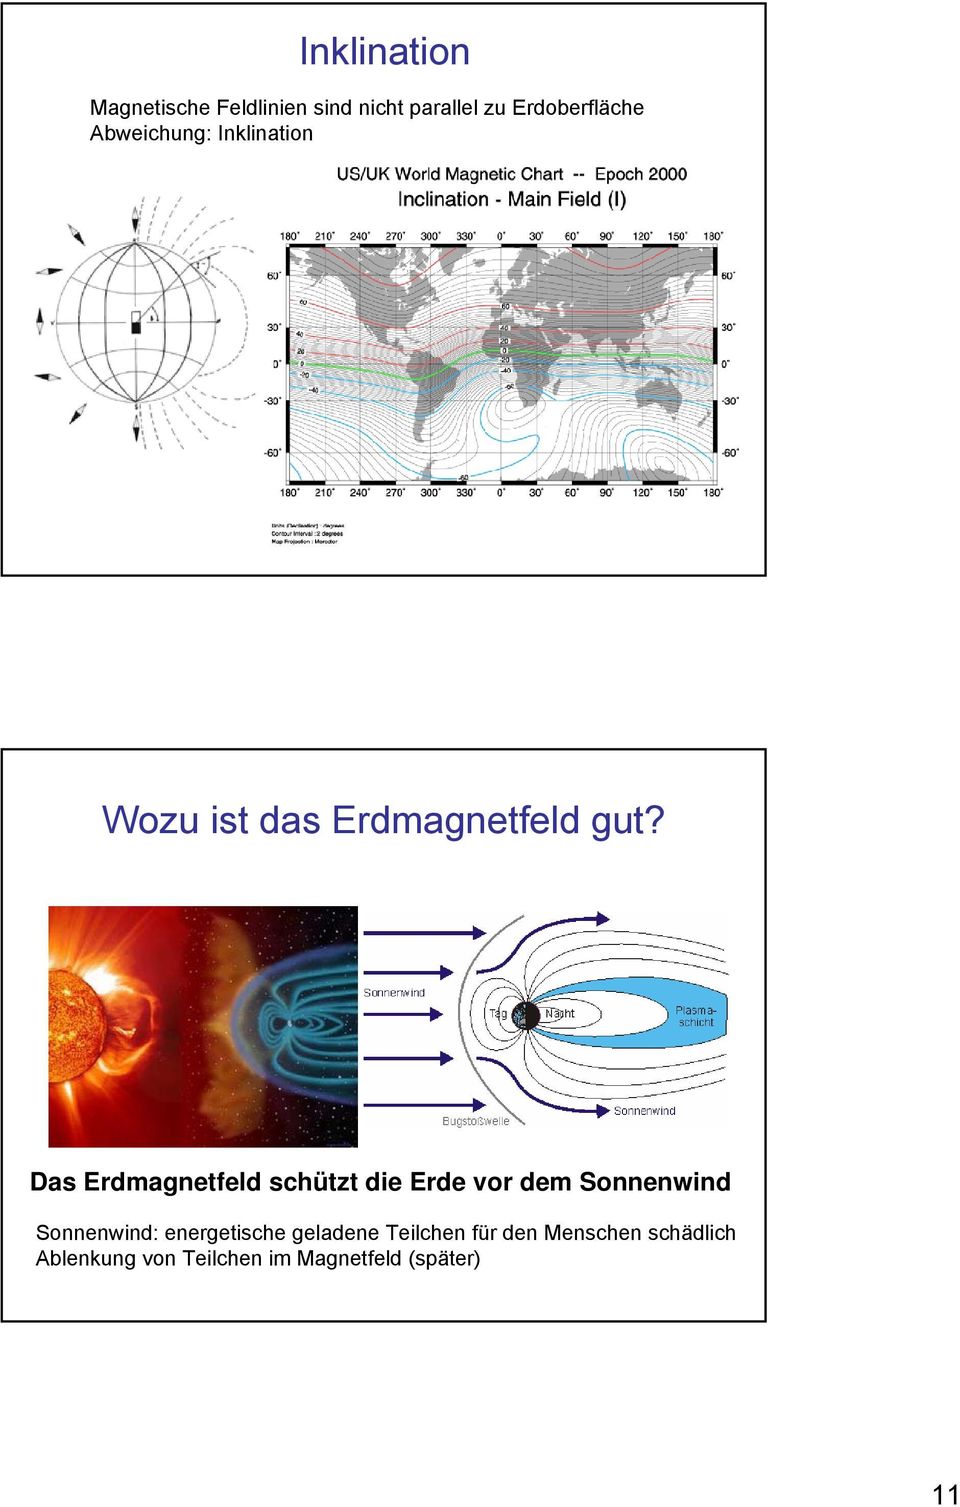 Das Erdmagnetfeld schützt die Erde vor dem Sonnenwind Sonnenwind: